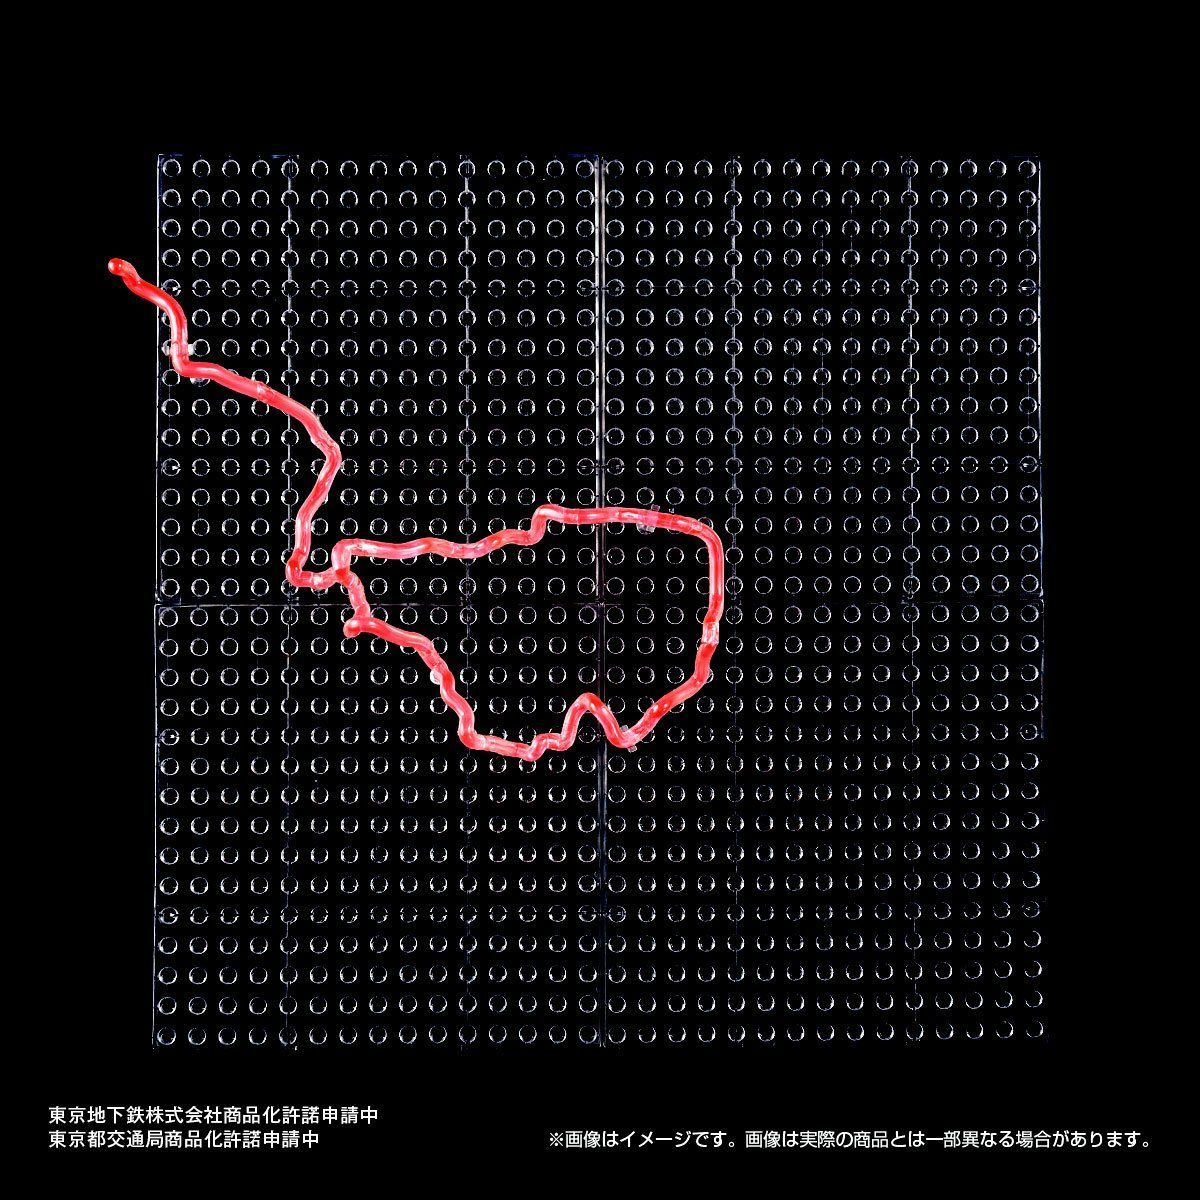 東京地下鉄立体路線図 フルコンプリートセット | フィギュア 